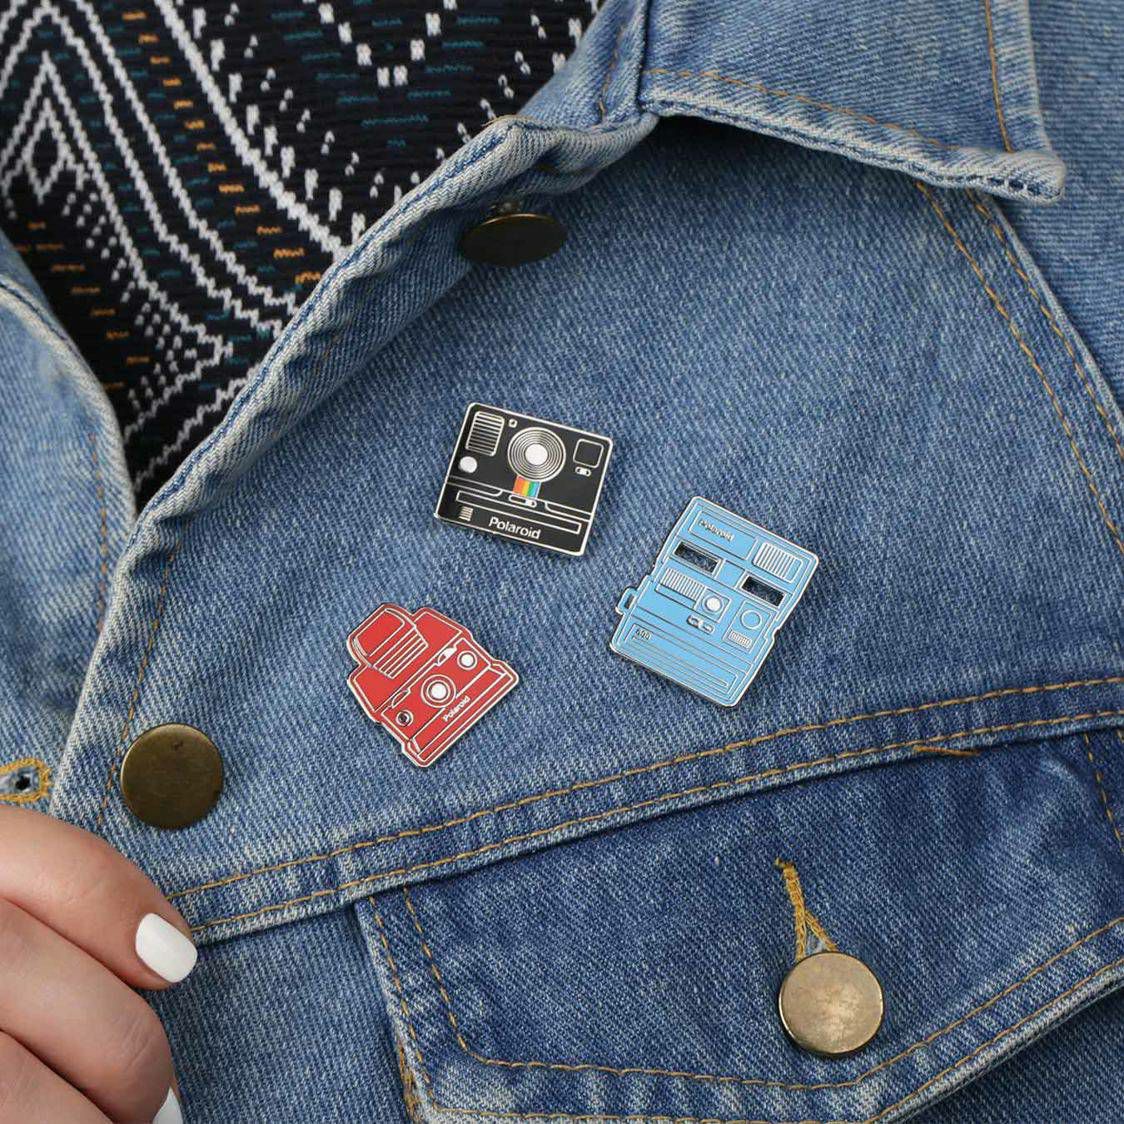 Polaroid Originals Camera Pin Badge Kit 5 pins (004689)